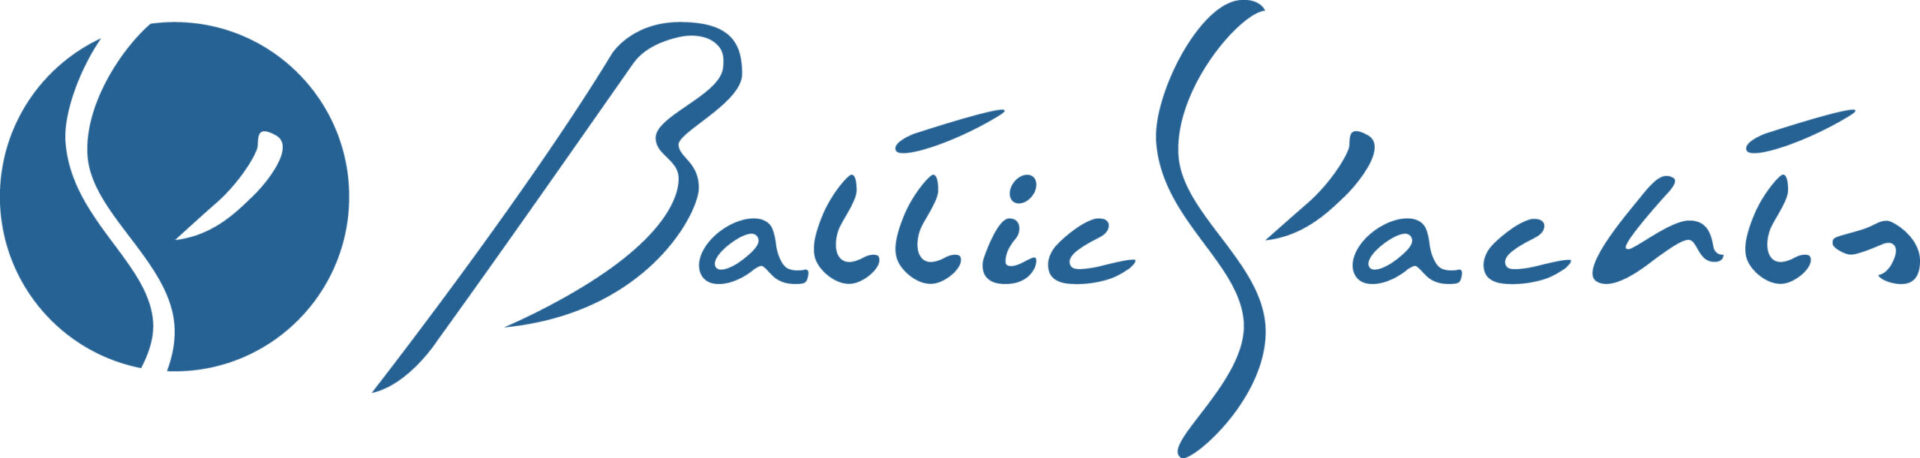 Baltic Yahcts Oy Ab Ltd